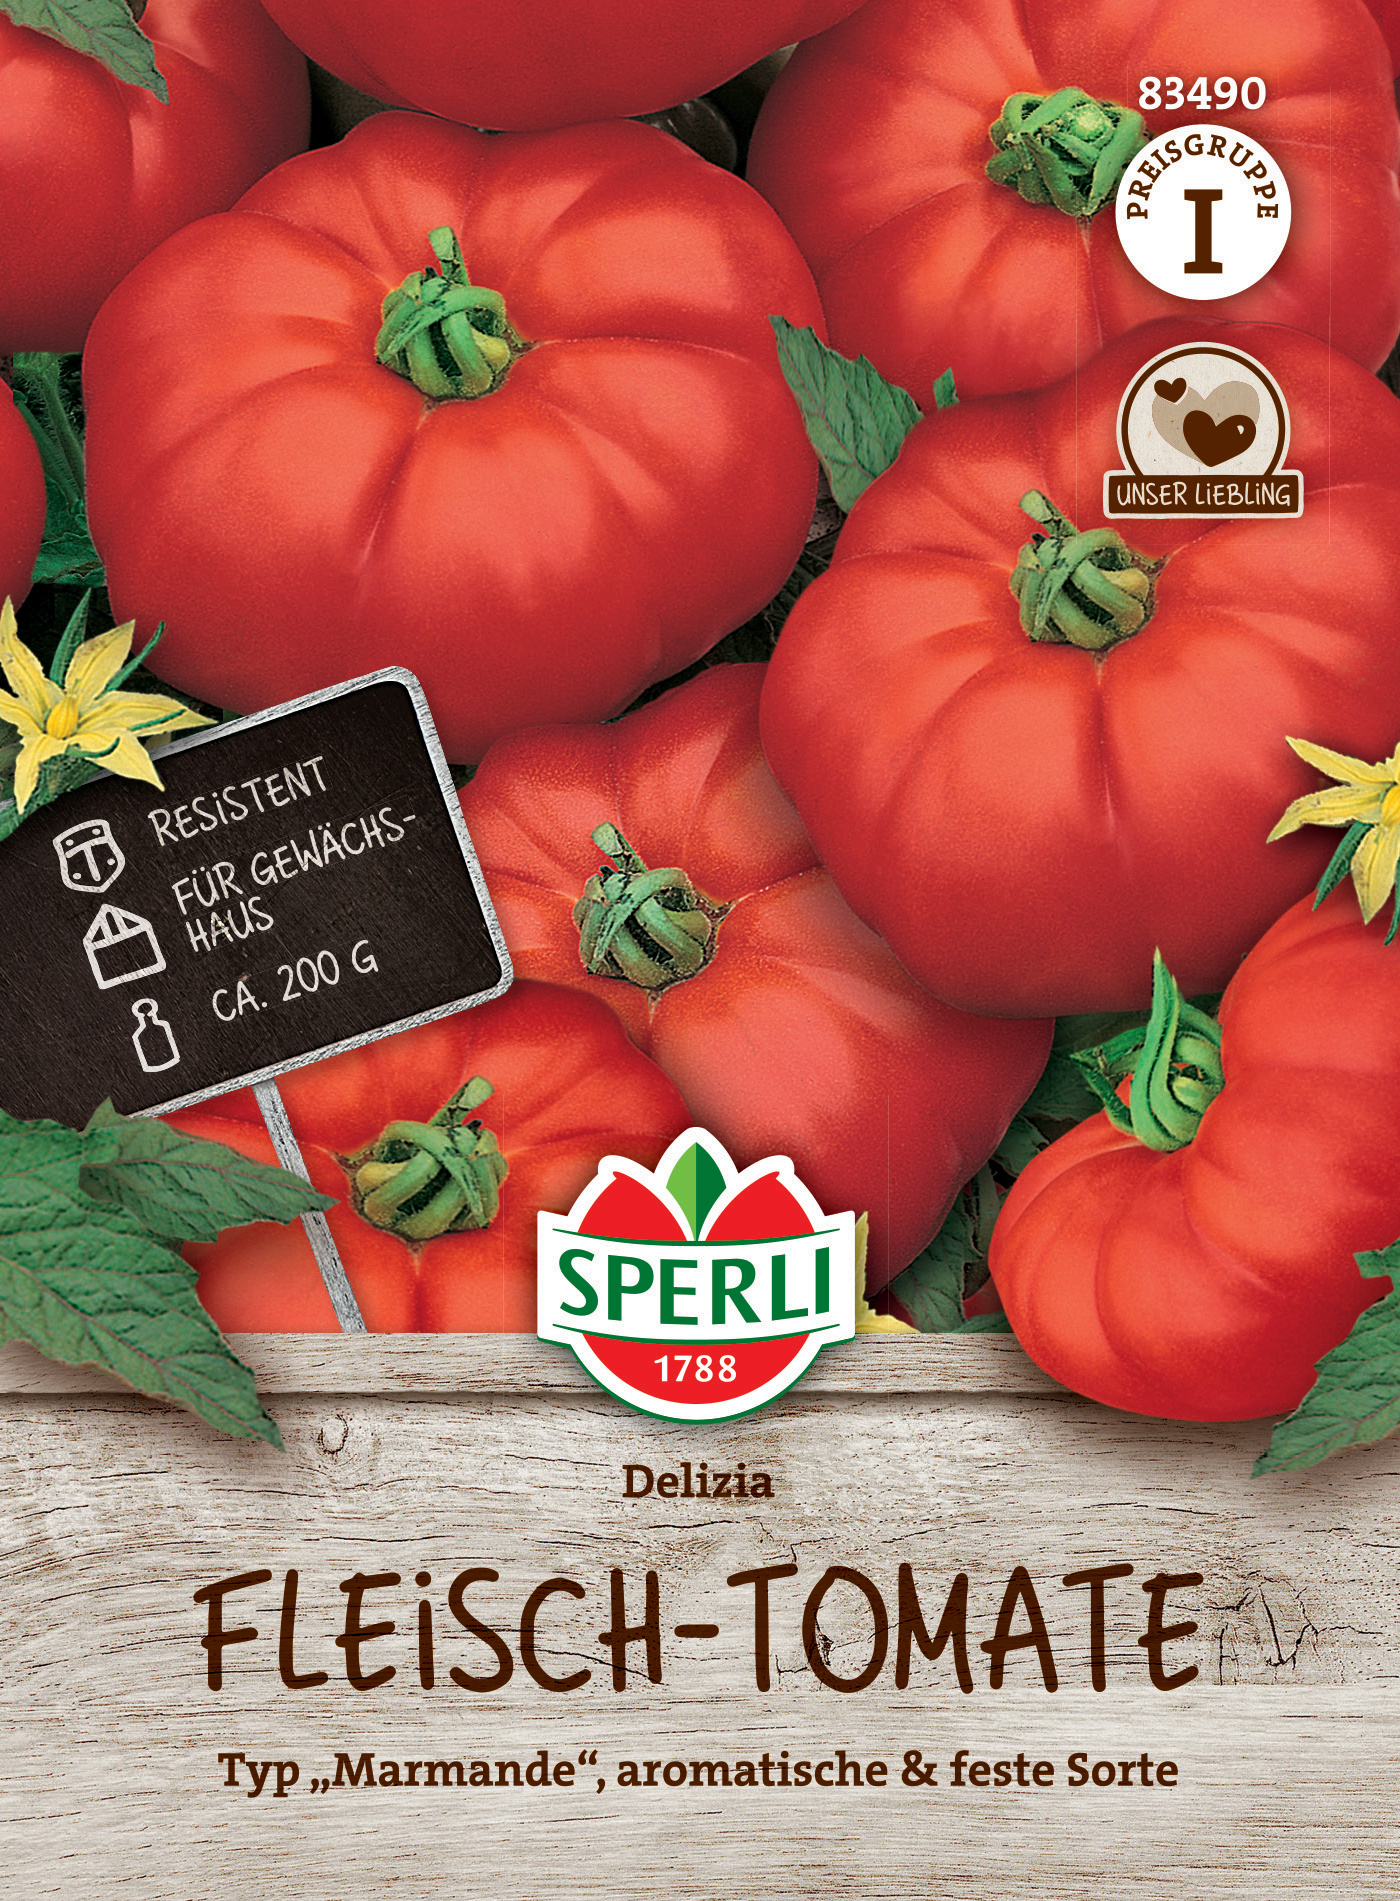 Fleisch-Tomate Delizia, F1